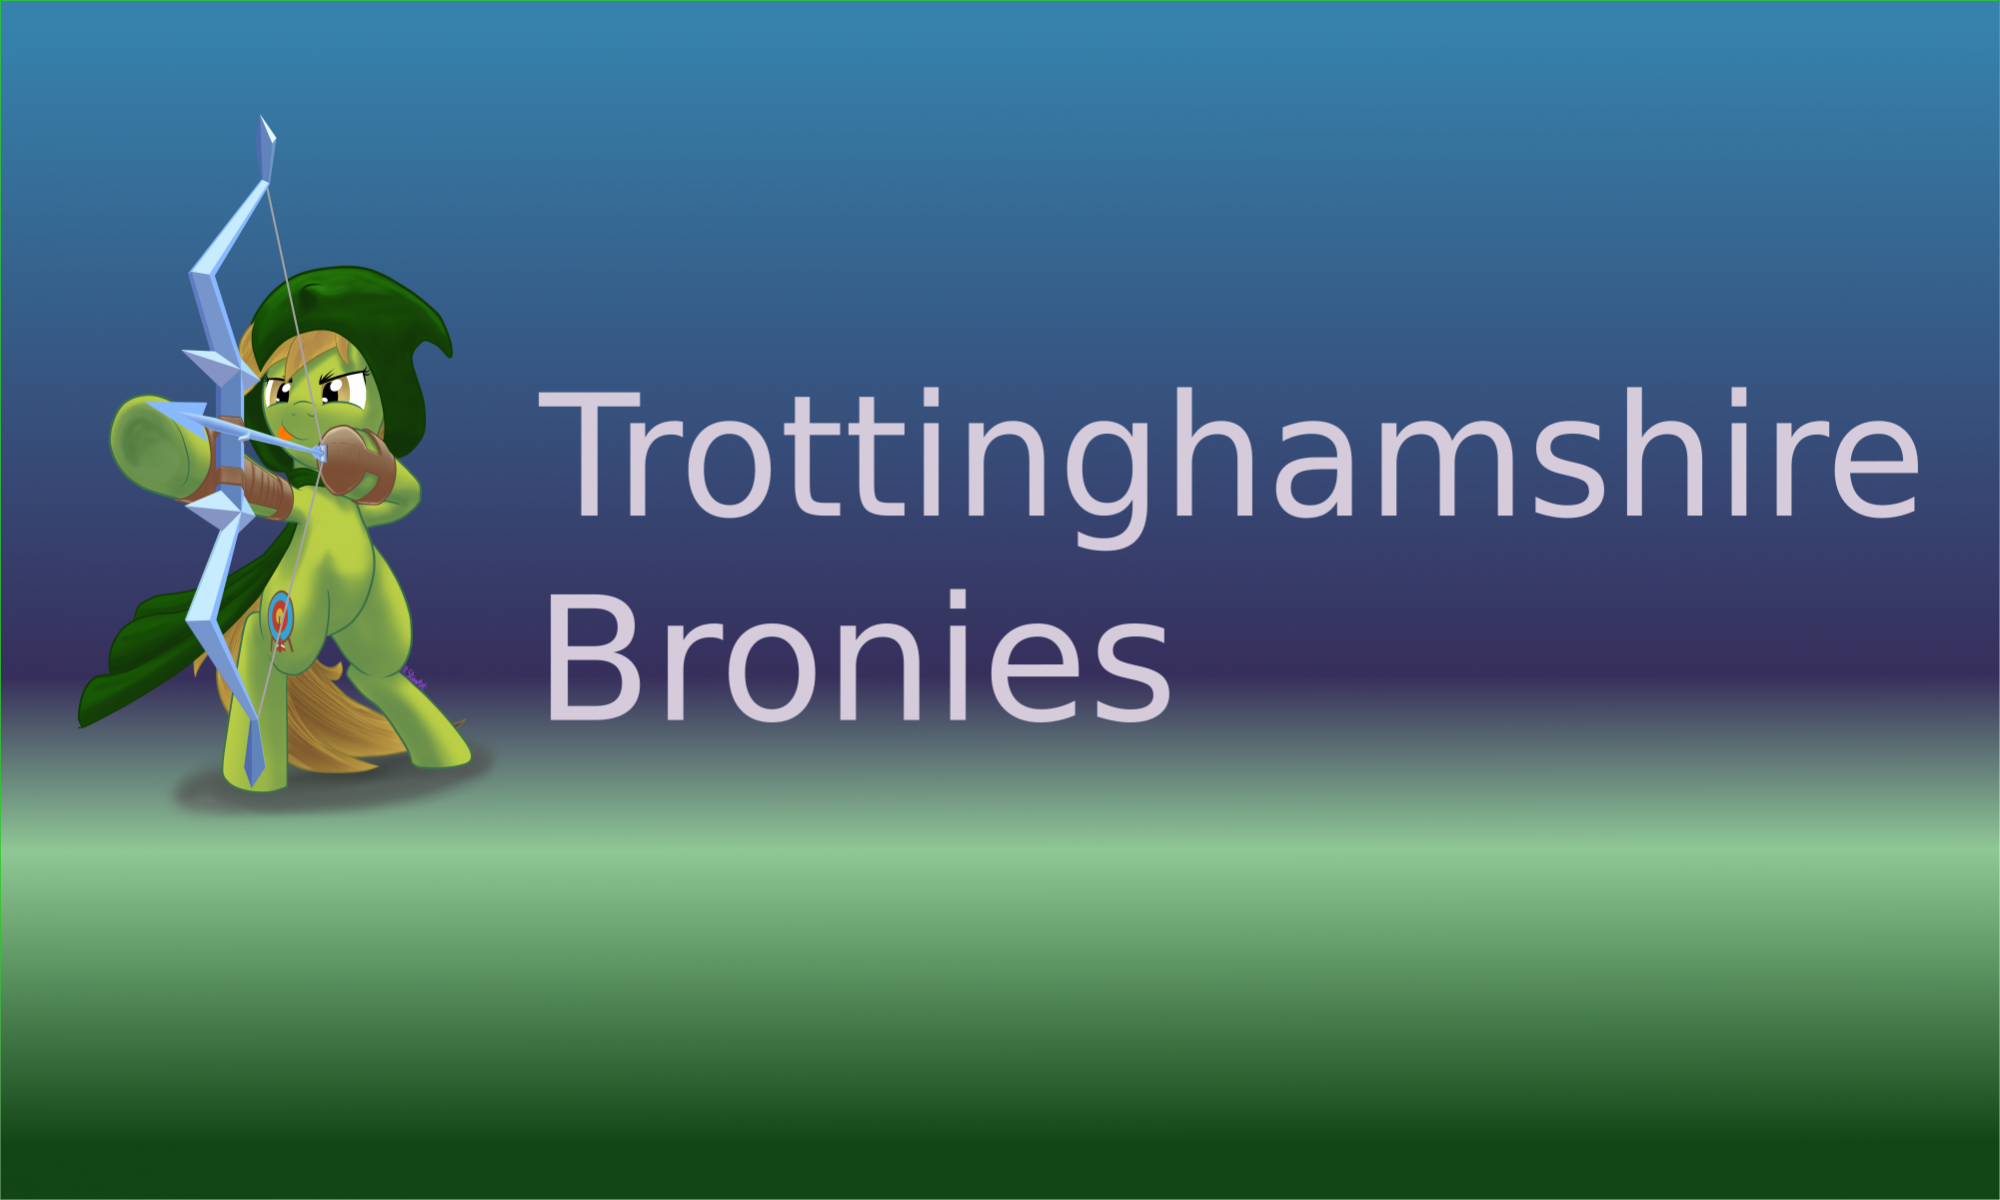 Trottinghamshire Bronies